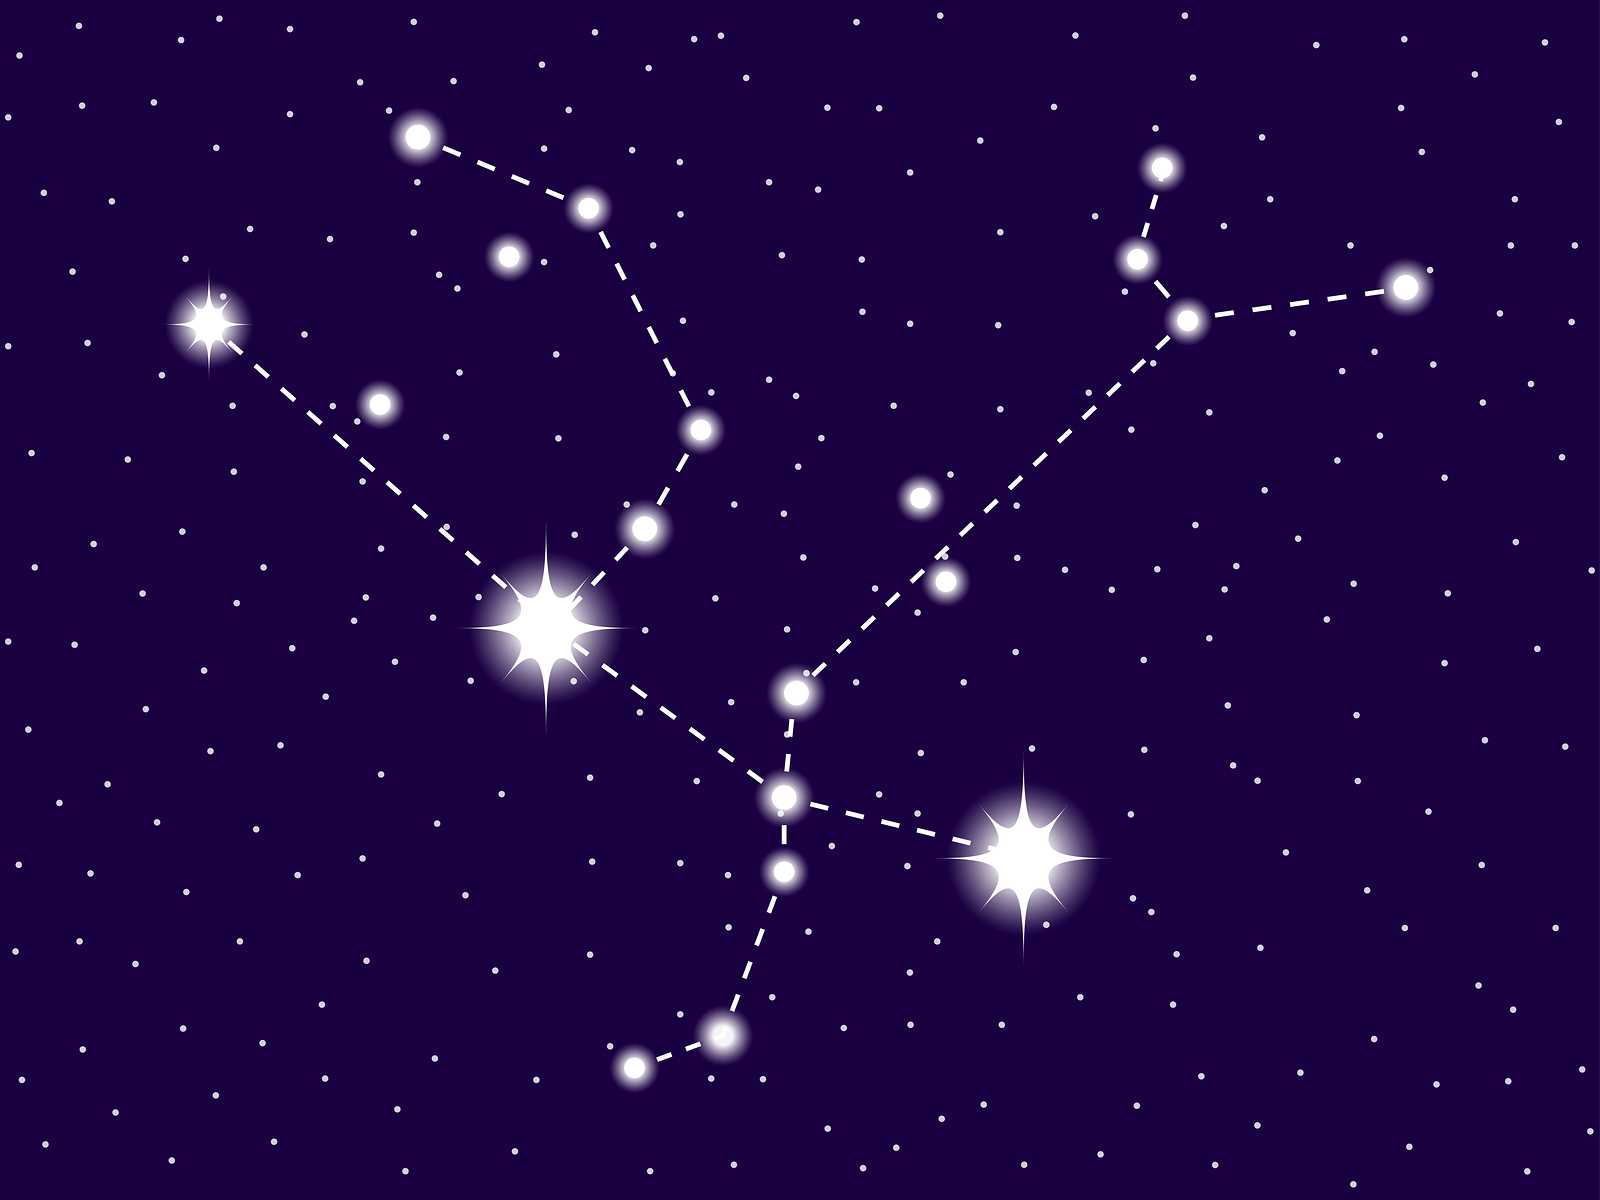 Созвездие андромеда: описание и интересные факты